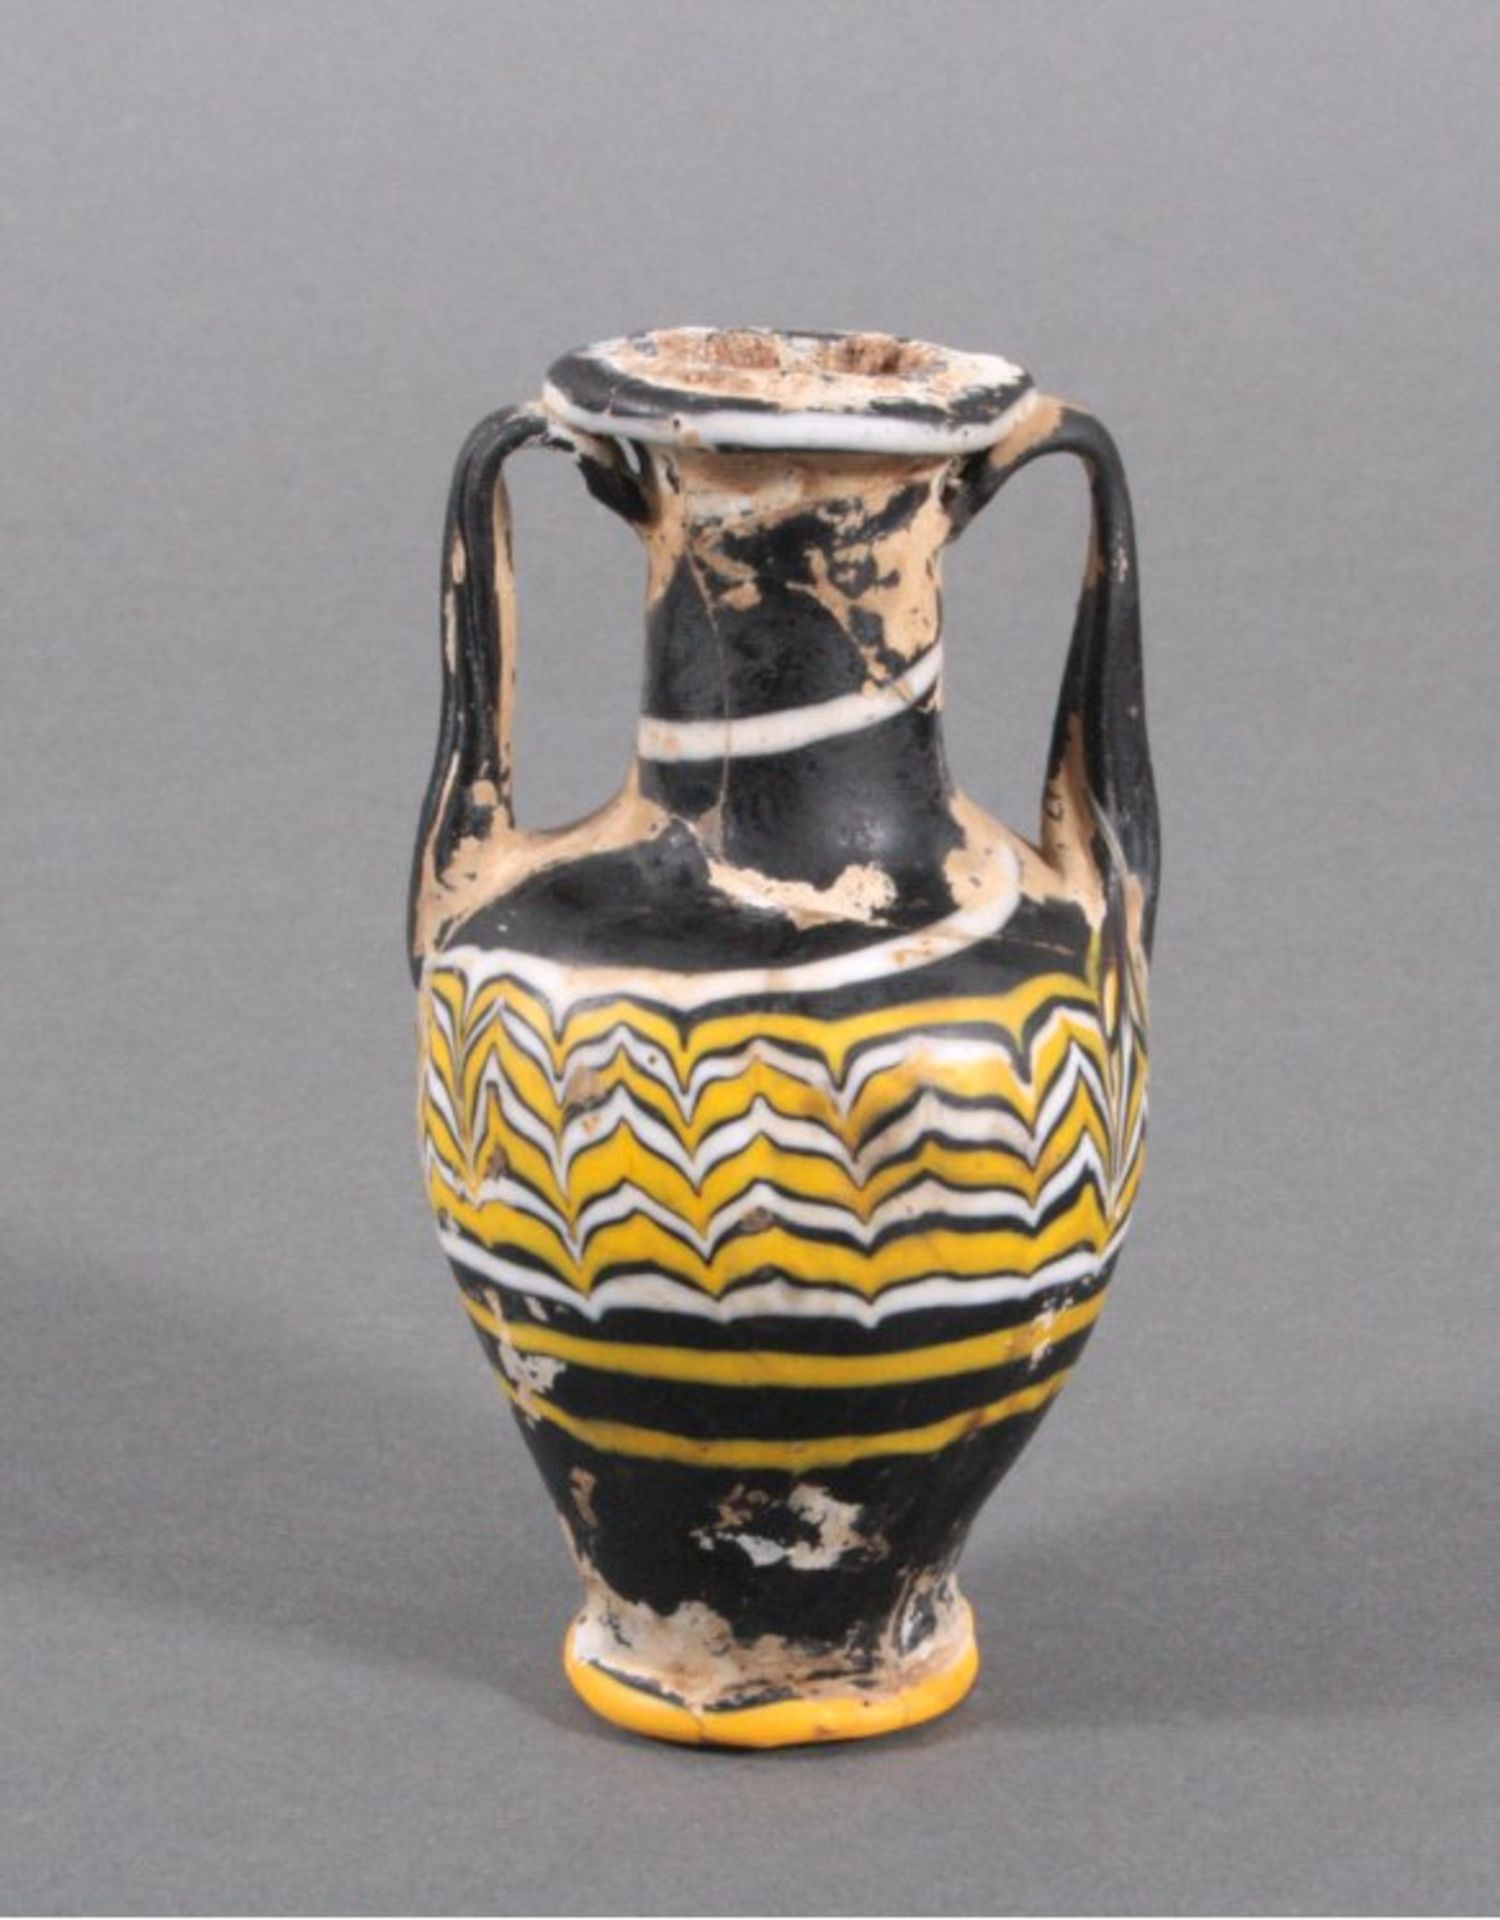 Amphorenvase, Griechenland 600 bis 500 v. Chr.Glasvase schwarzgrundig mit farbigen Einschmelzungen - Bild 2 aus 3